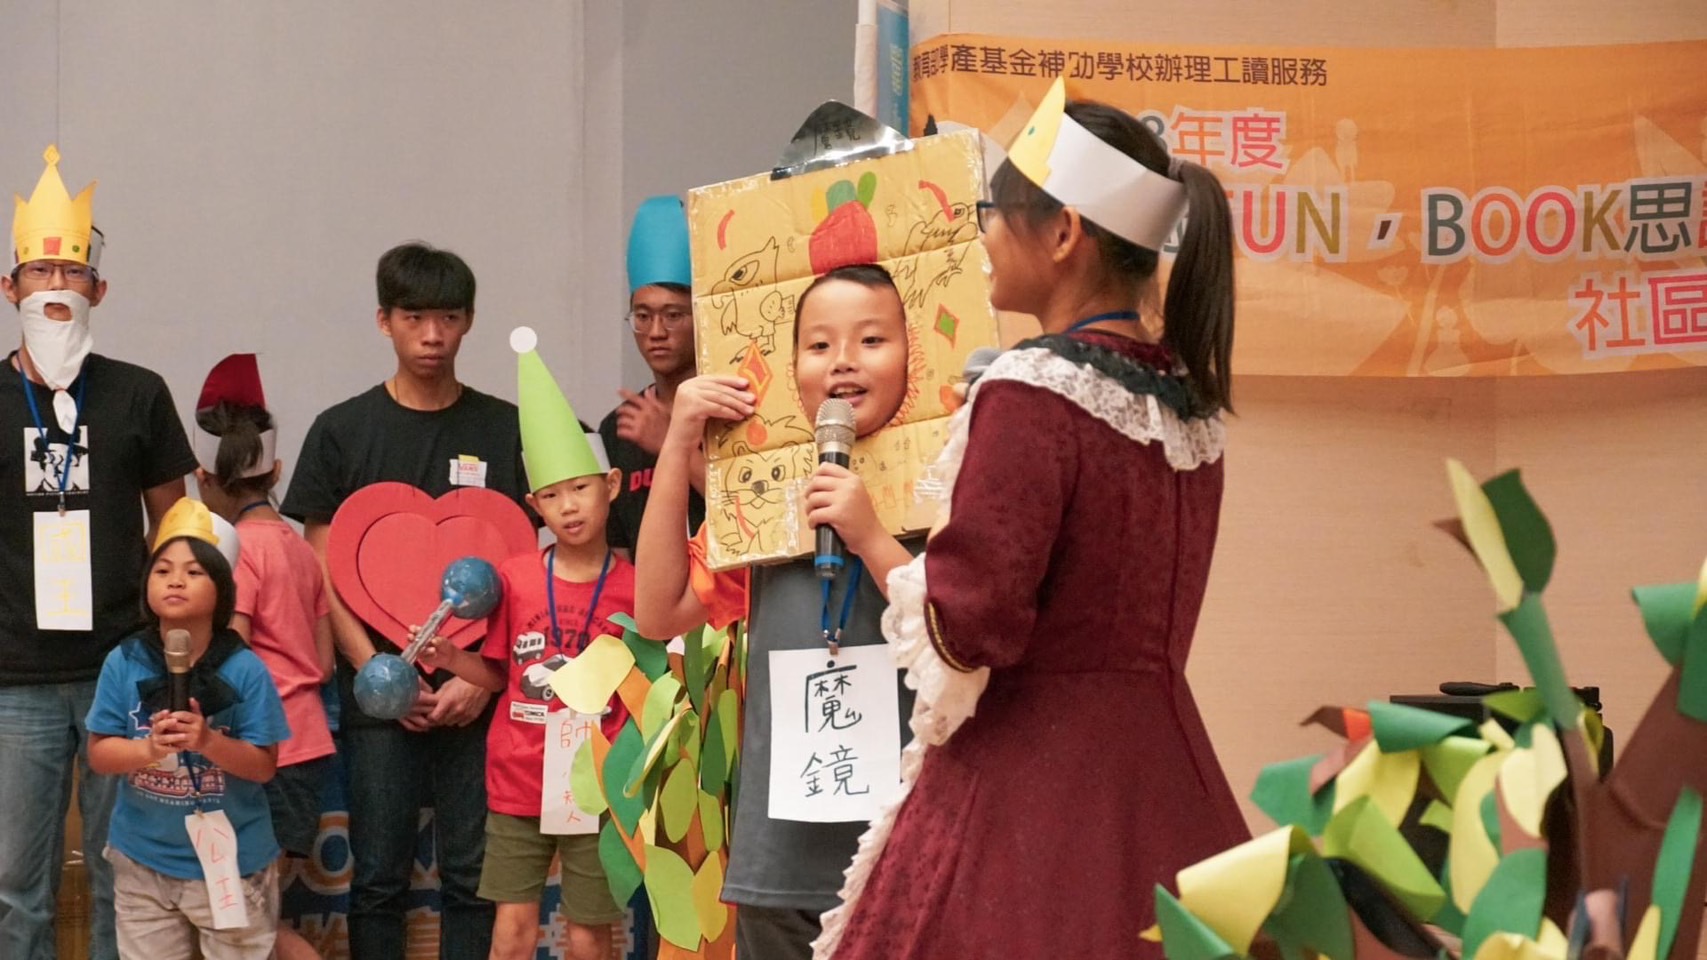 111/11/30媒合青年投入志願服務，台南青年志工中心專訪